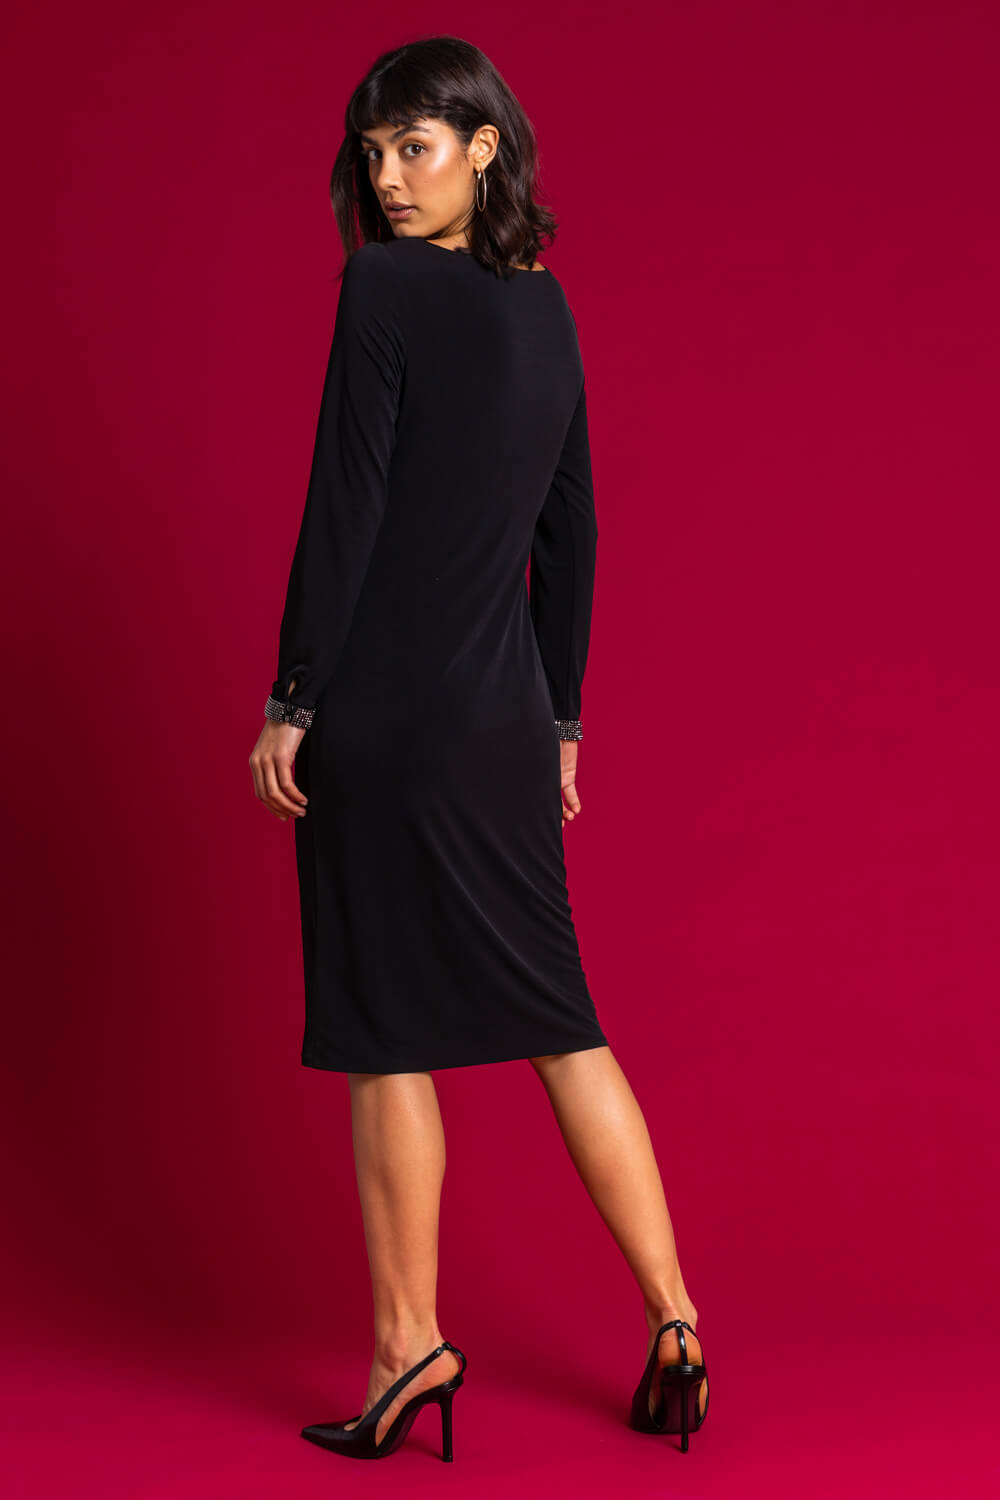 Black Sparkle Embellished Ruched Dress, Image 2 of 4